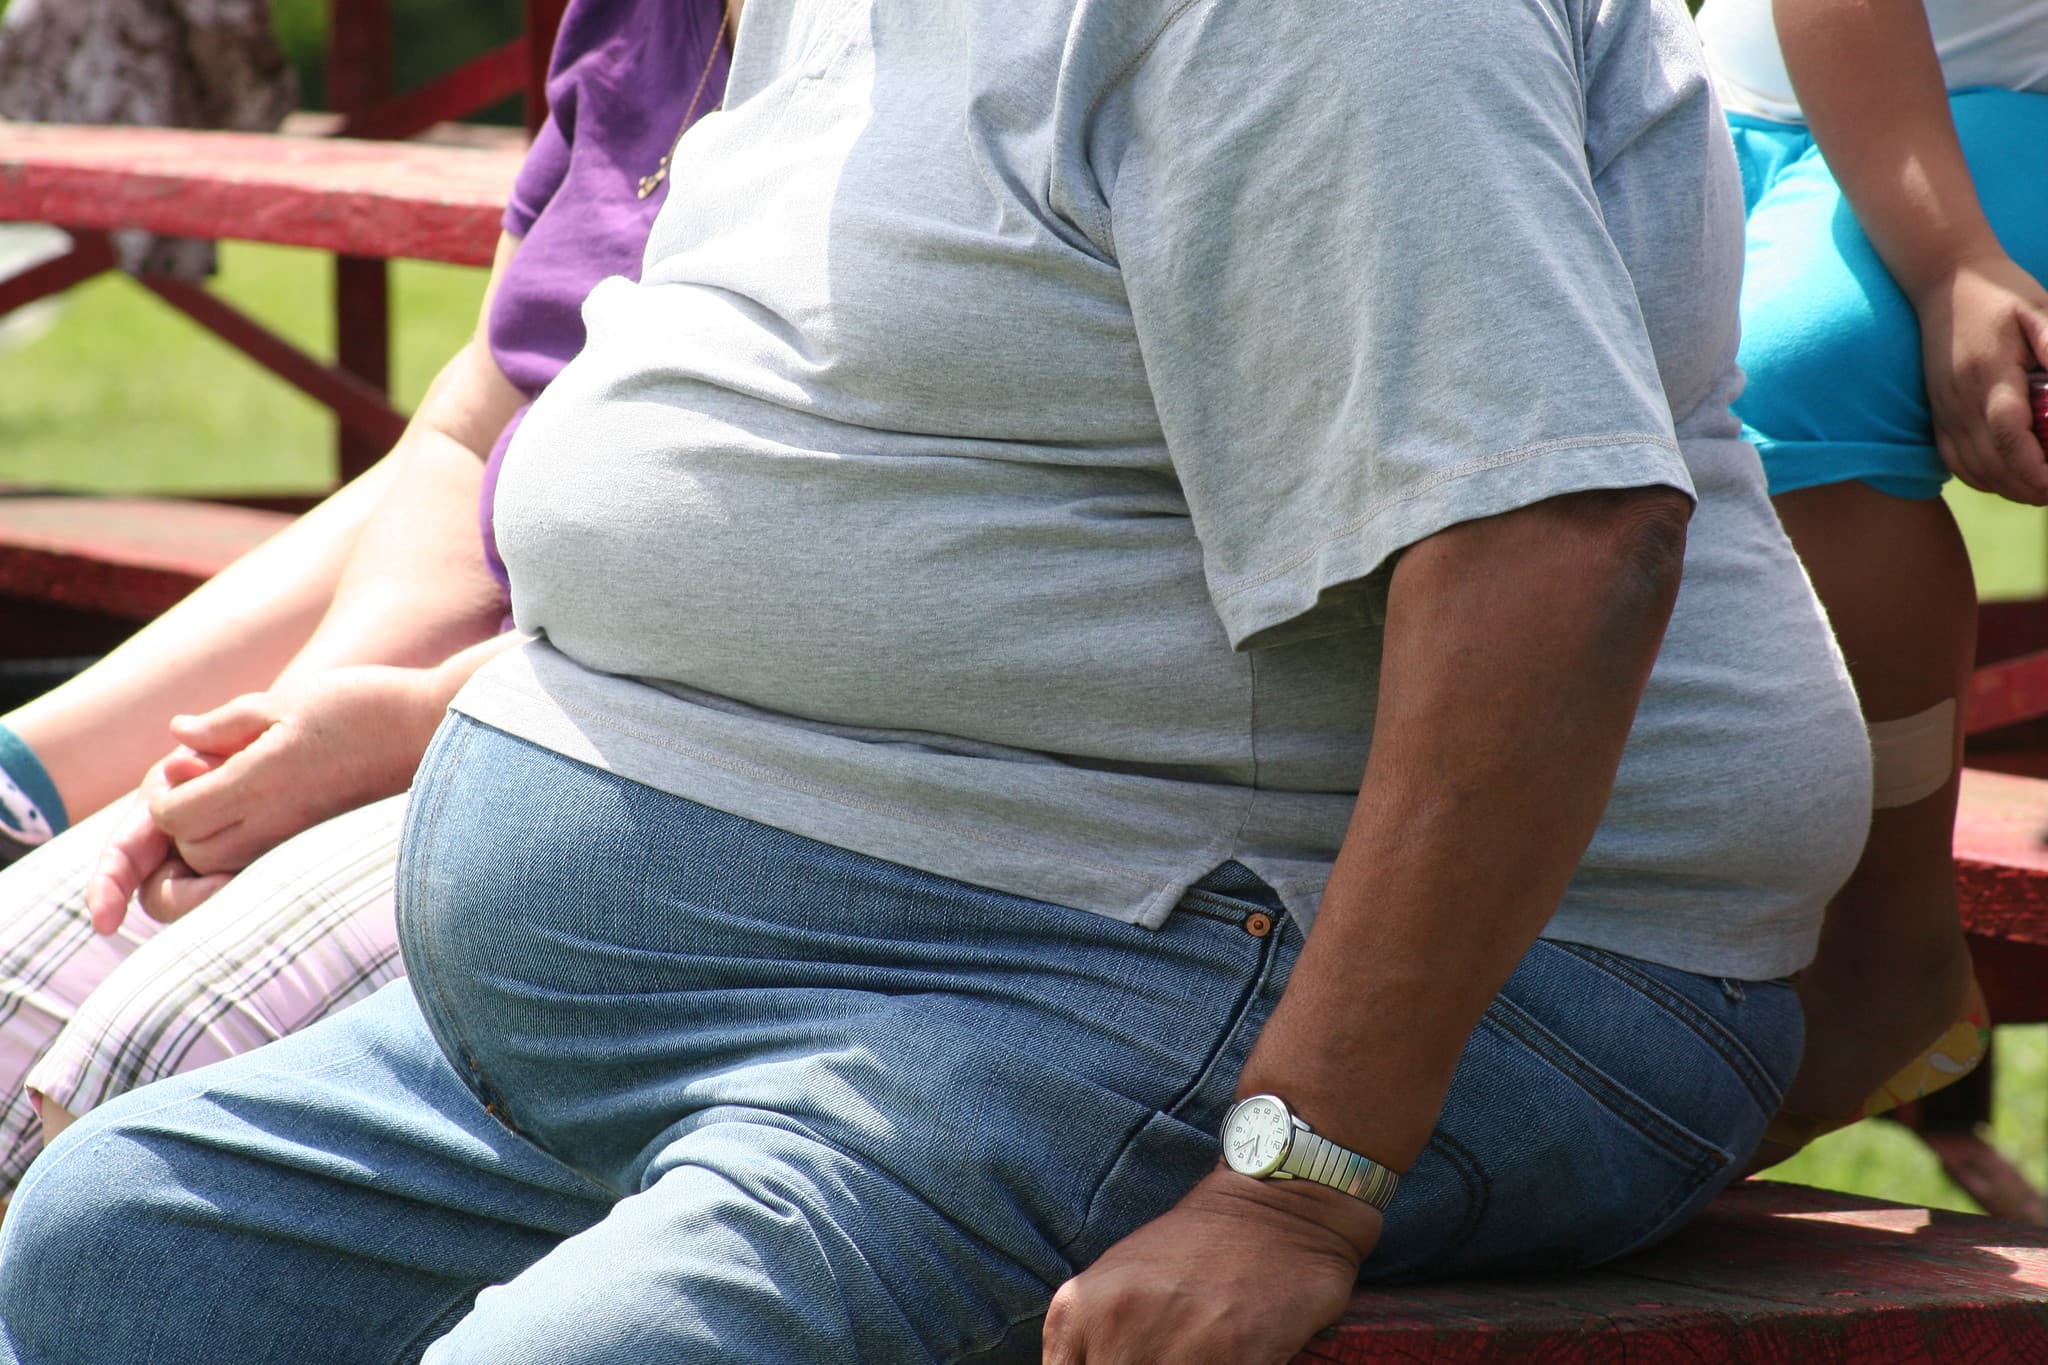 Quelles sont les causes et conséquences de l’obésité ?